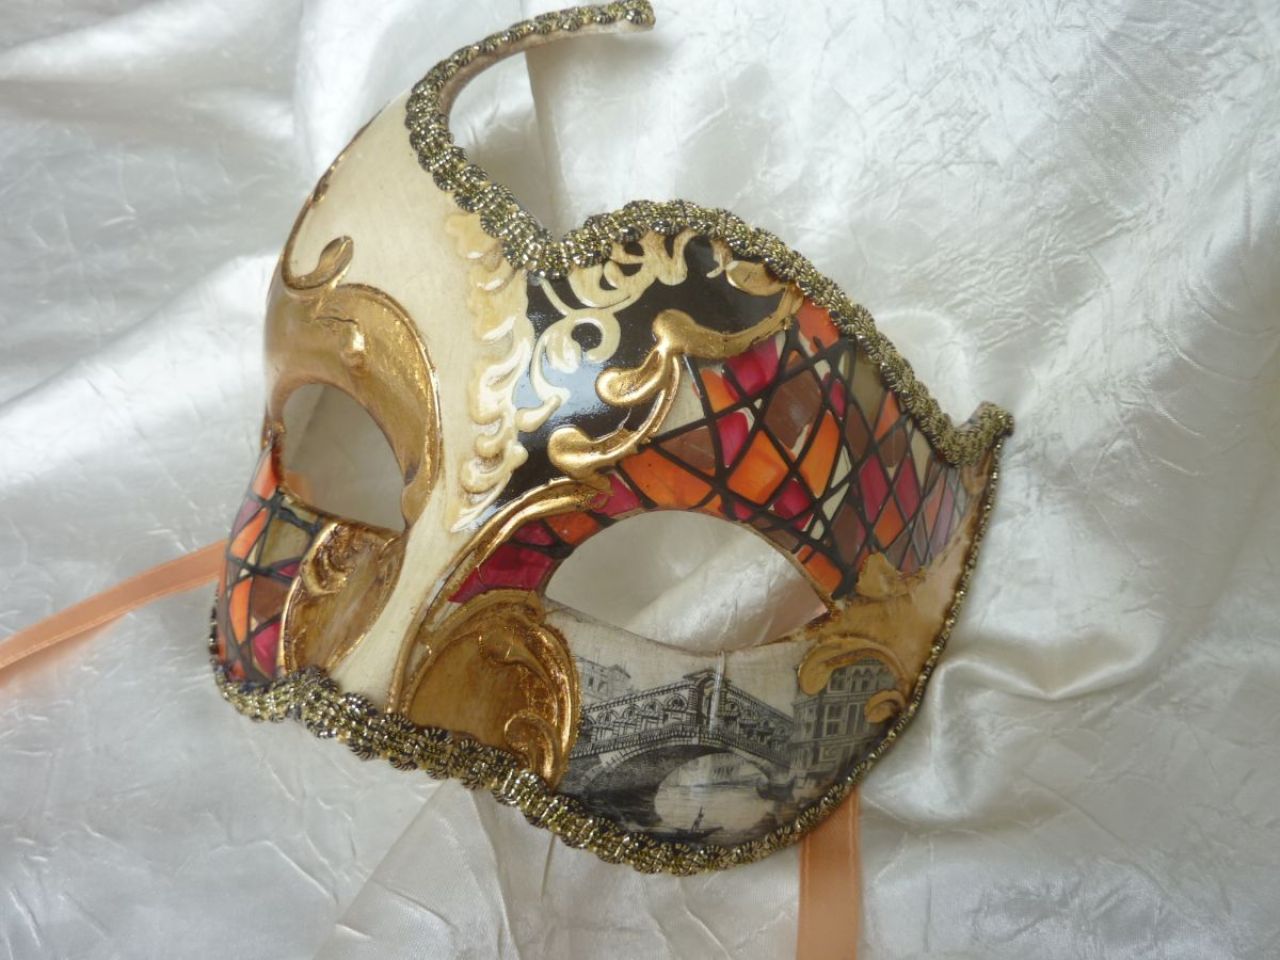 masque loup avec décoration rouge et orange, fond blanc avec feuille d'or, reproduction d'une vue du pont de Rialto 